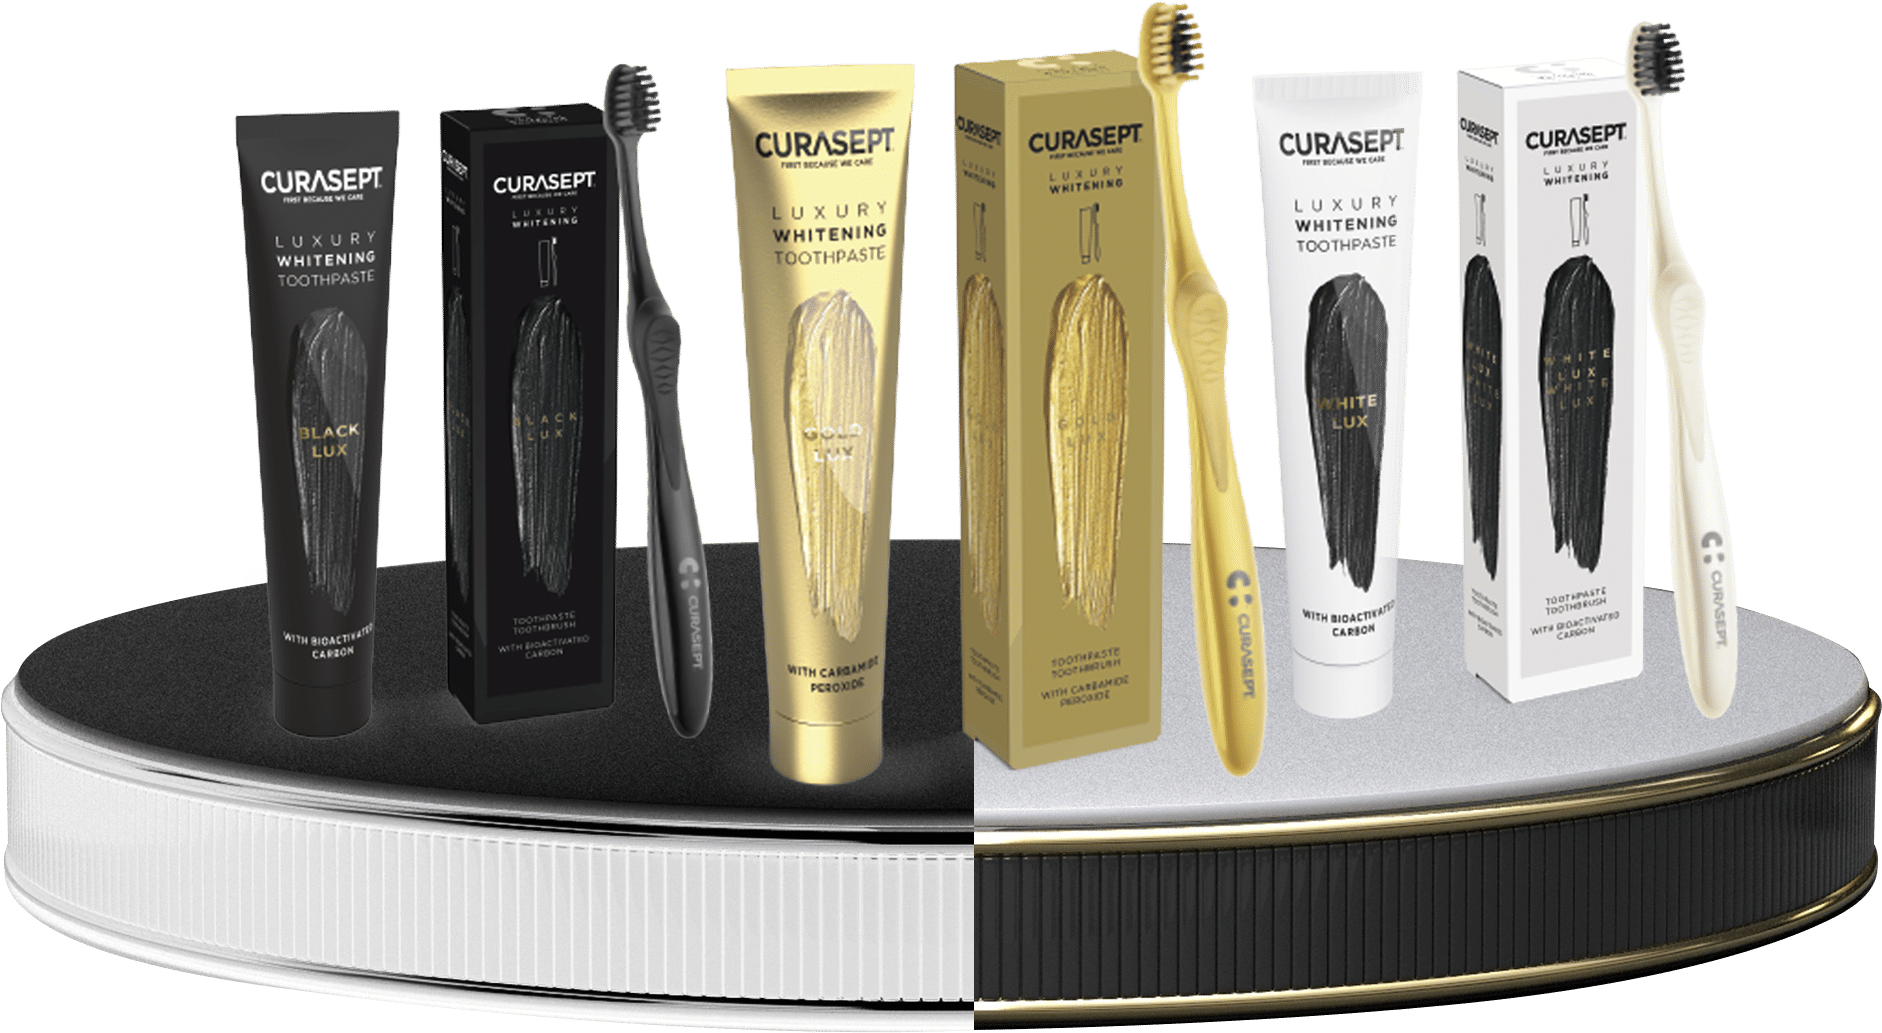 famiglia linea Curasept Luxury gold black white spazzolini e dentifrici